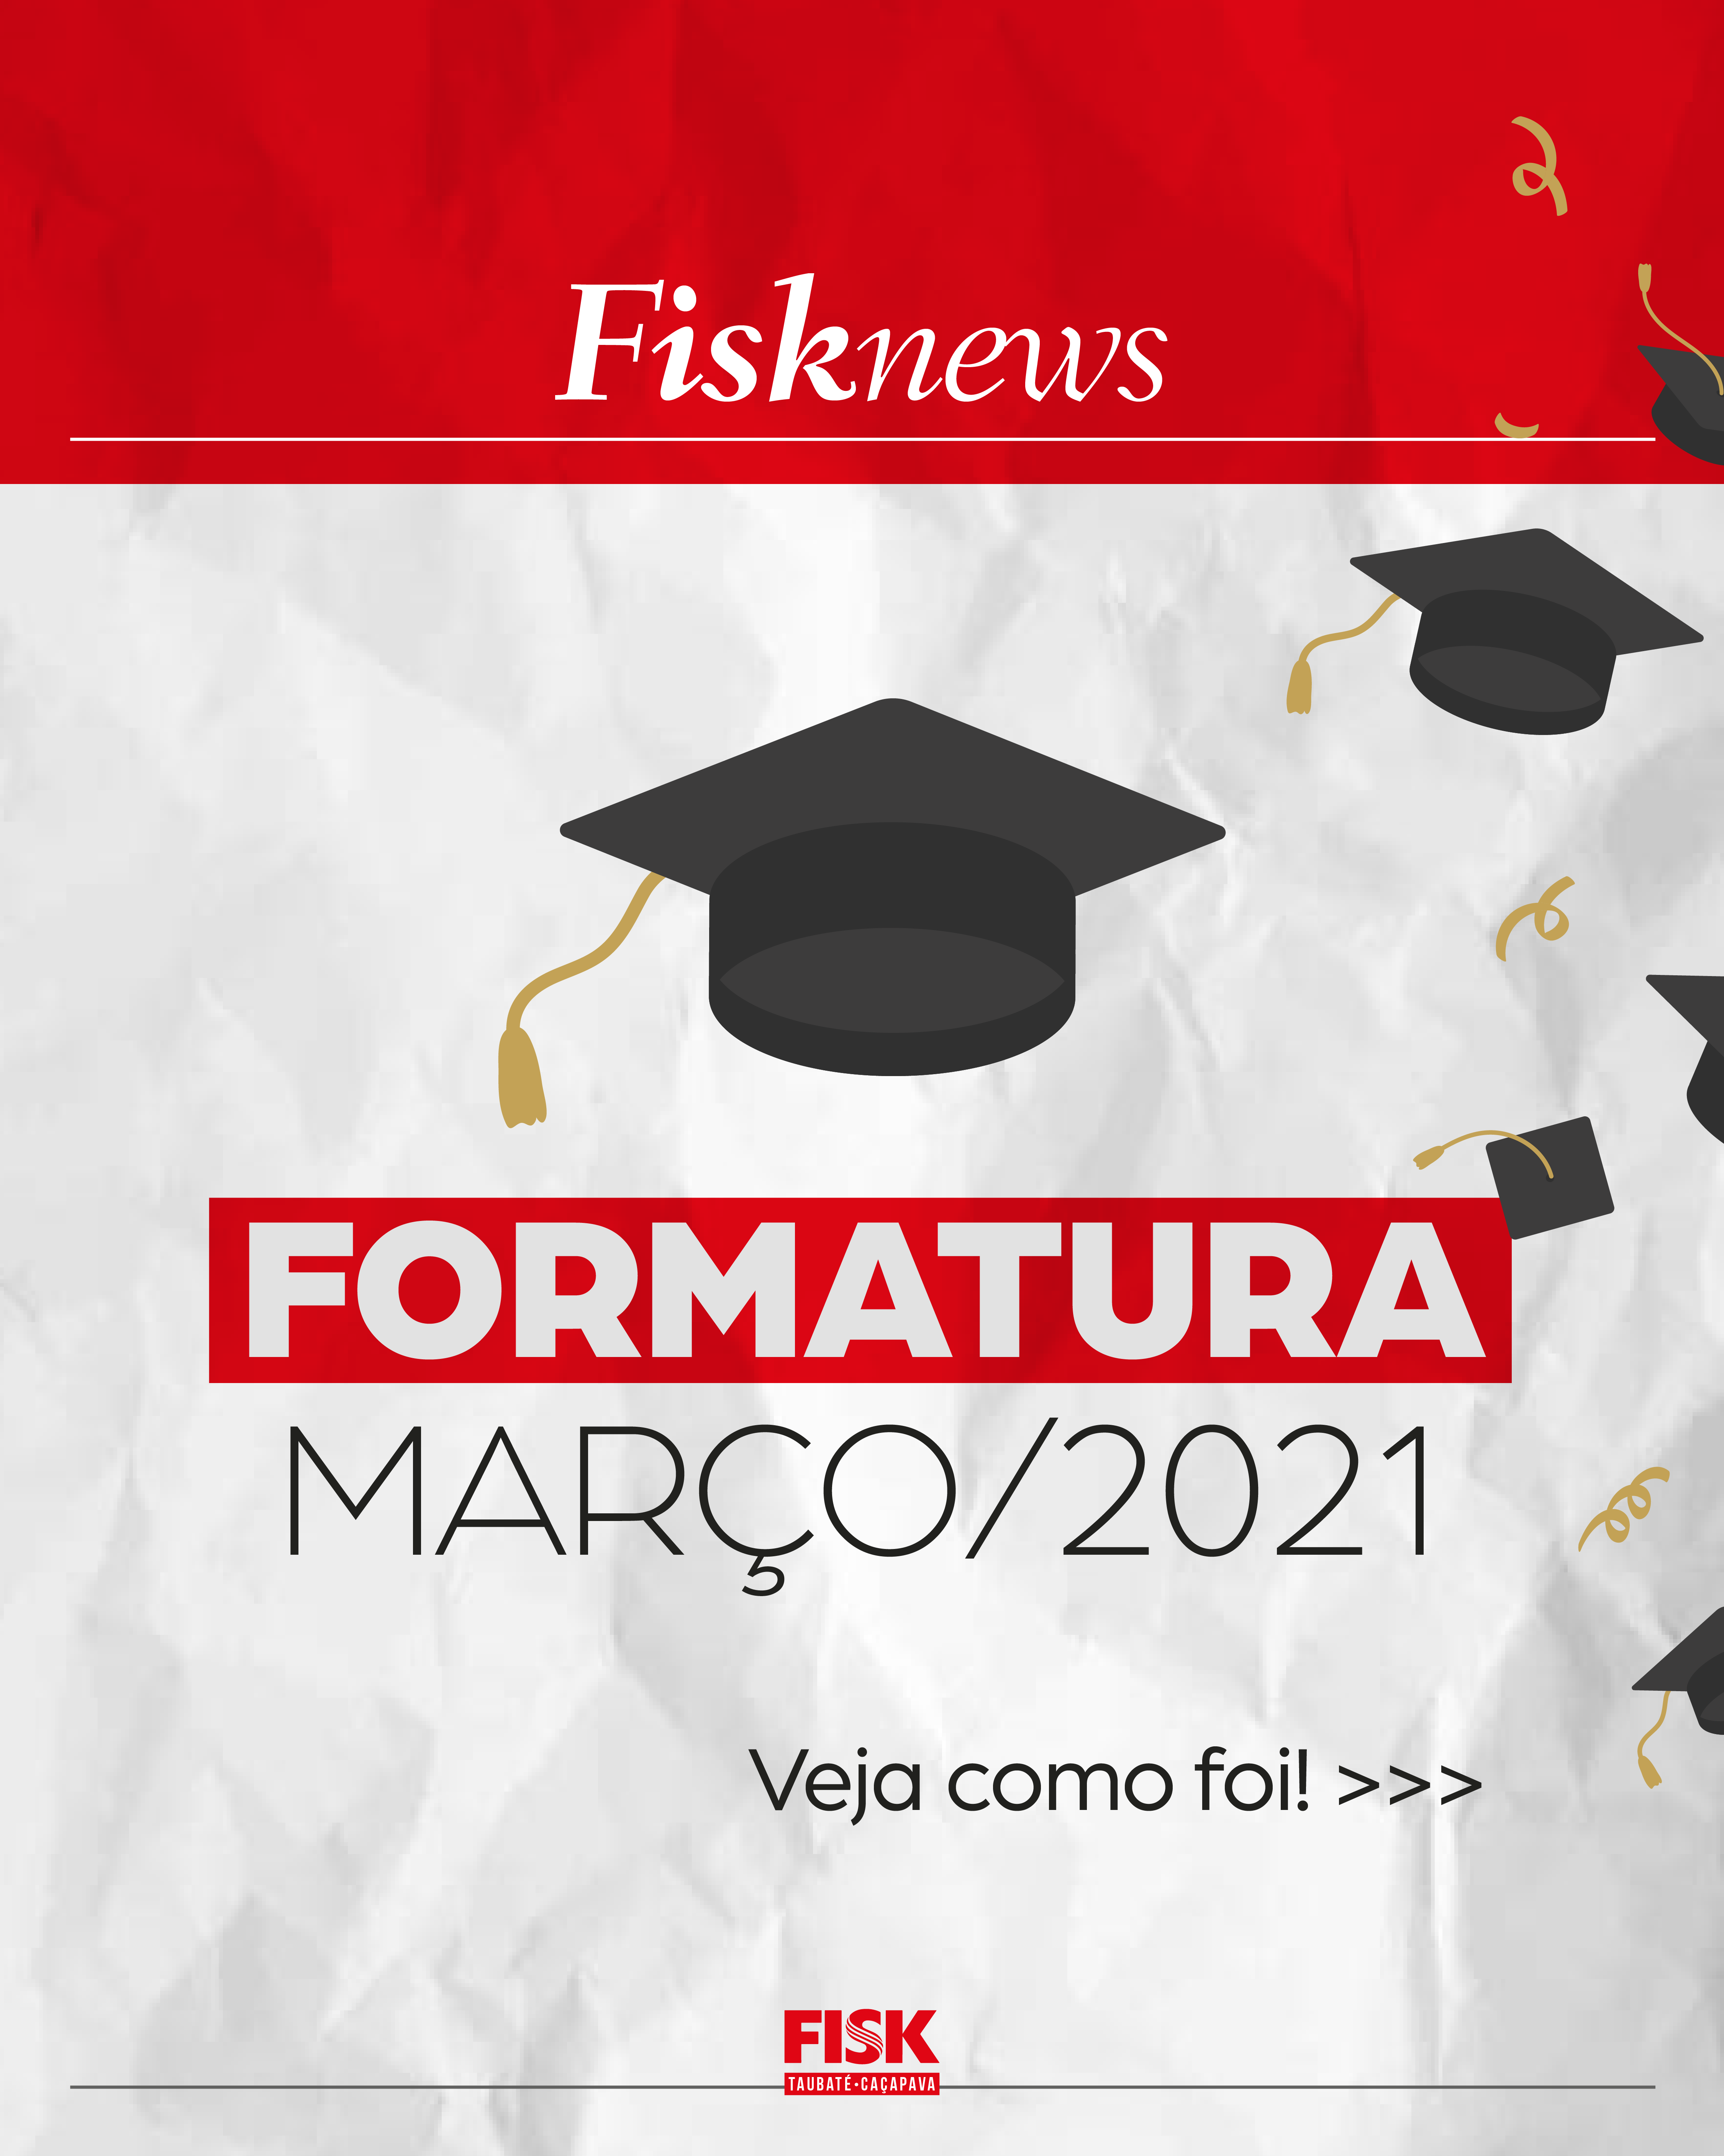 Fisk Caçapava e Taubaté/SP – Formatura FISK Março/2021